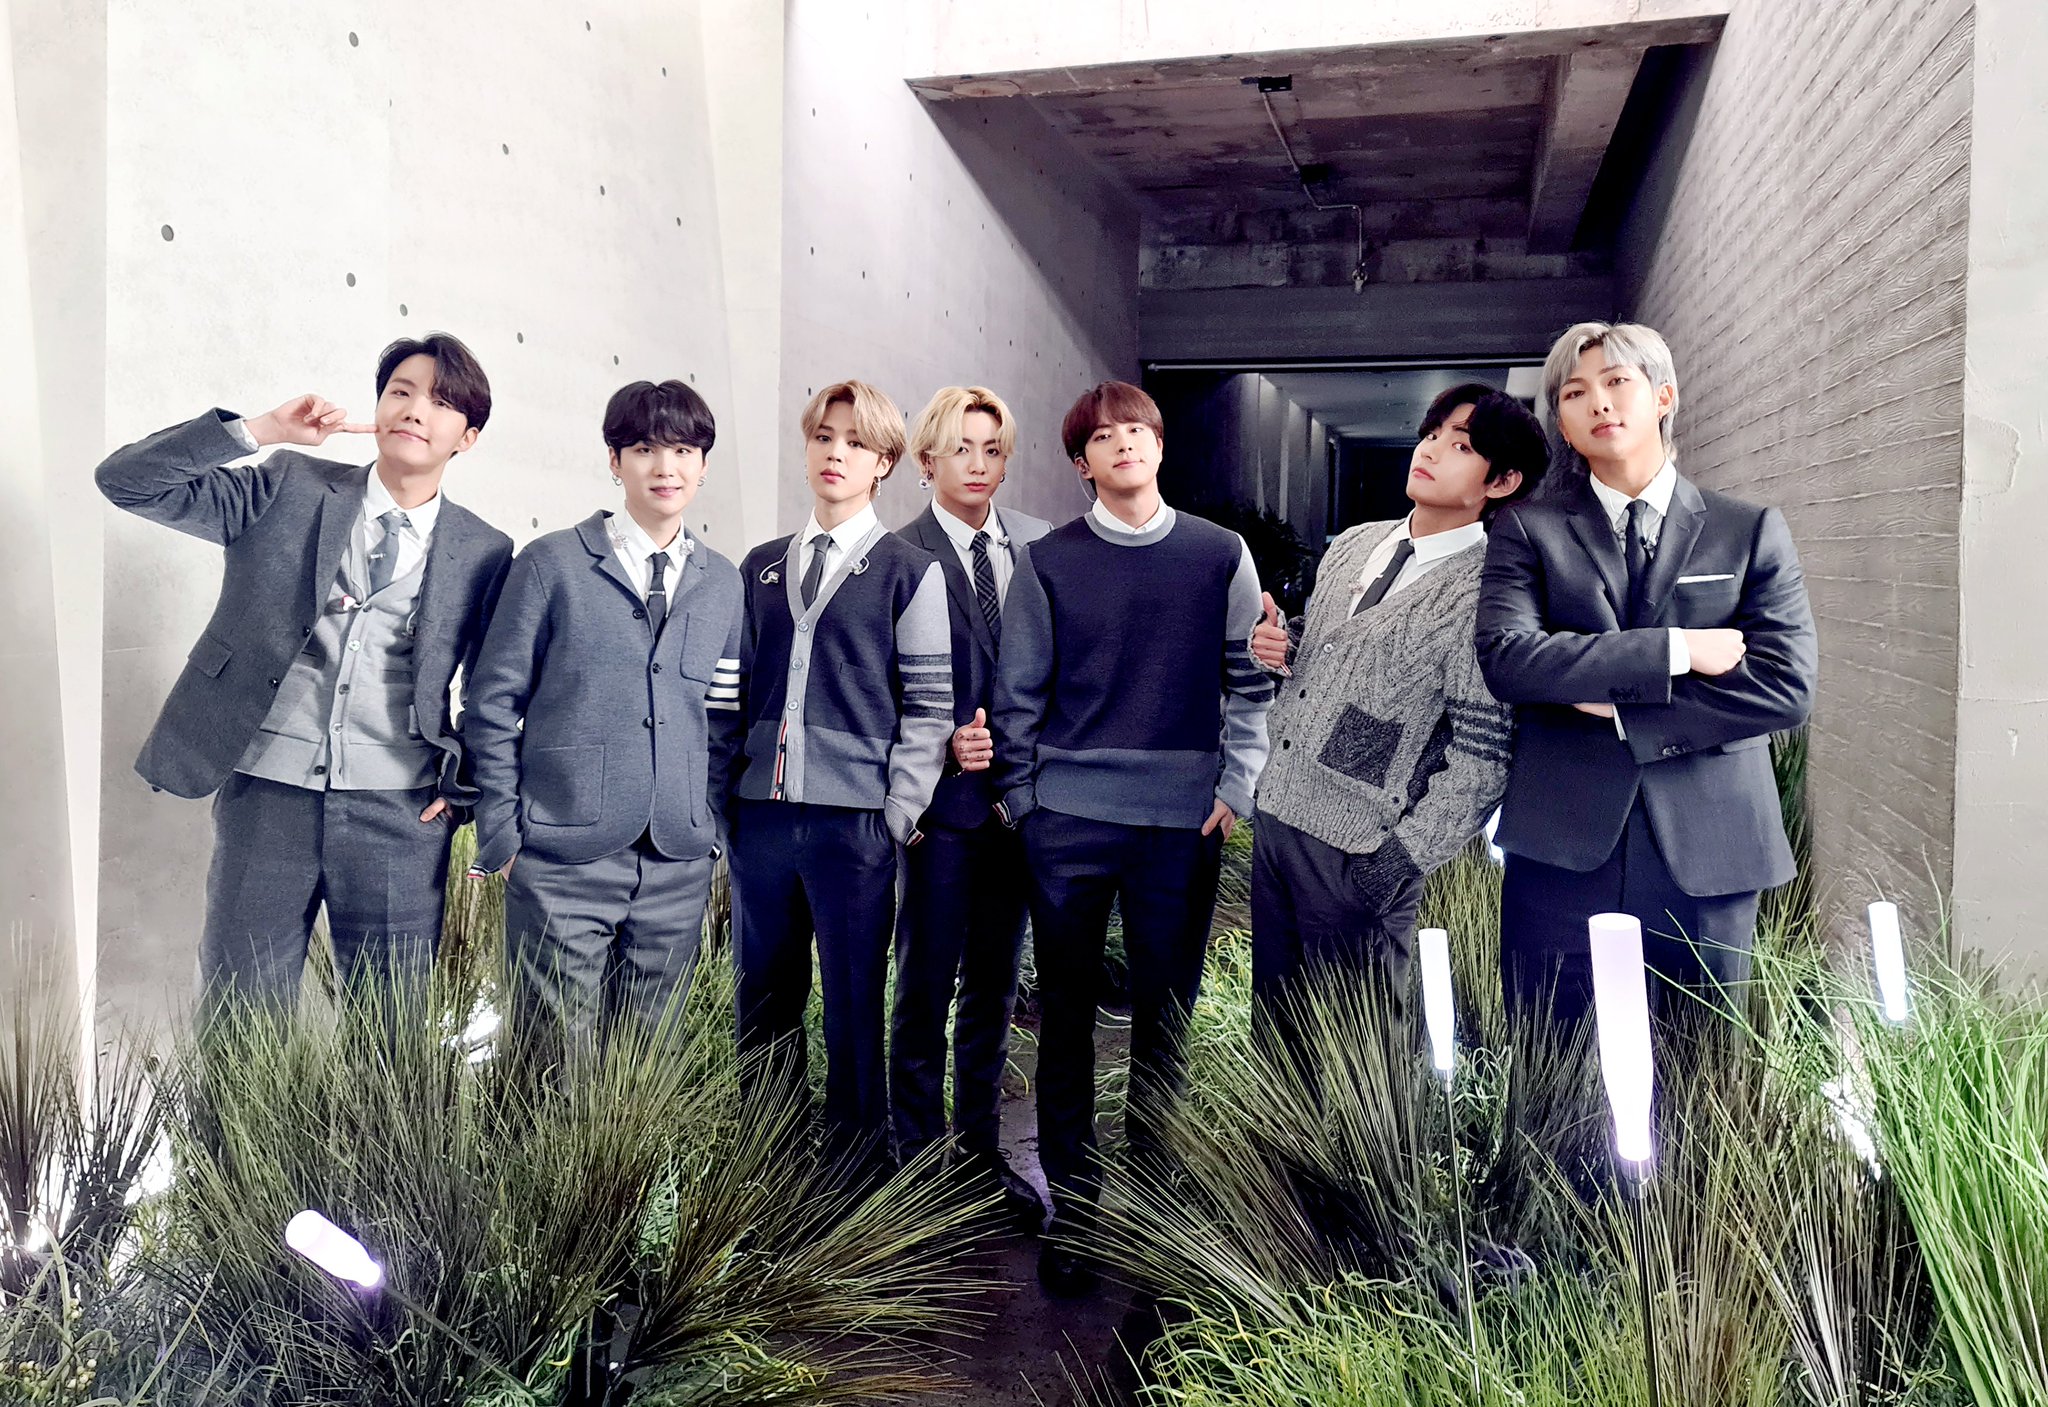 Grupo BTS posando para foto em meio a grama em roupas com tom de cinza e preto